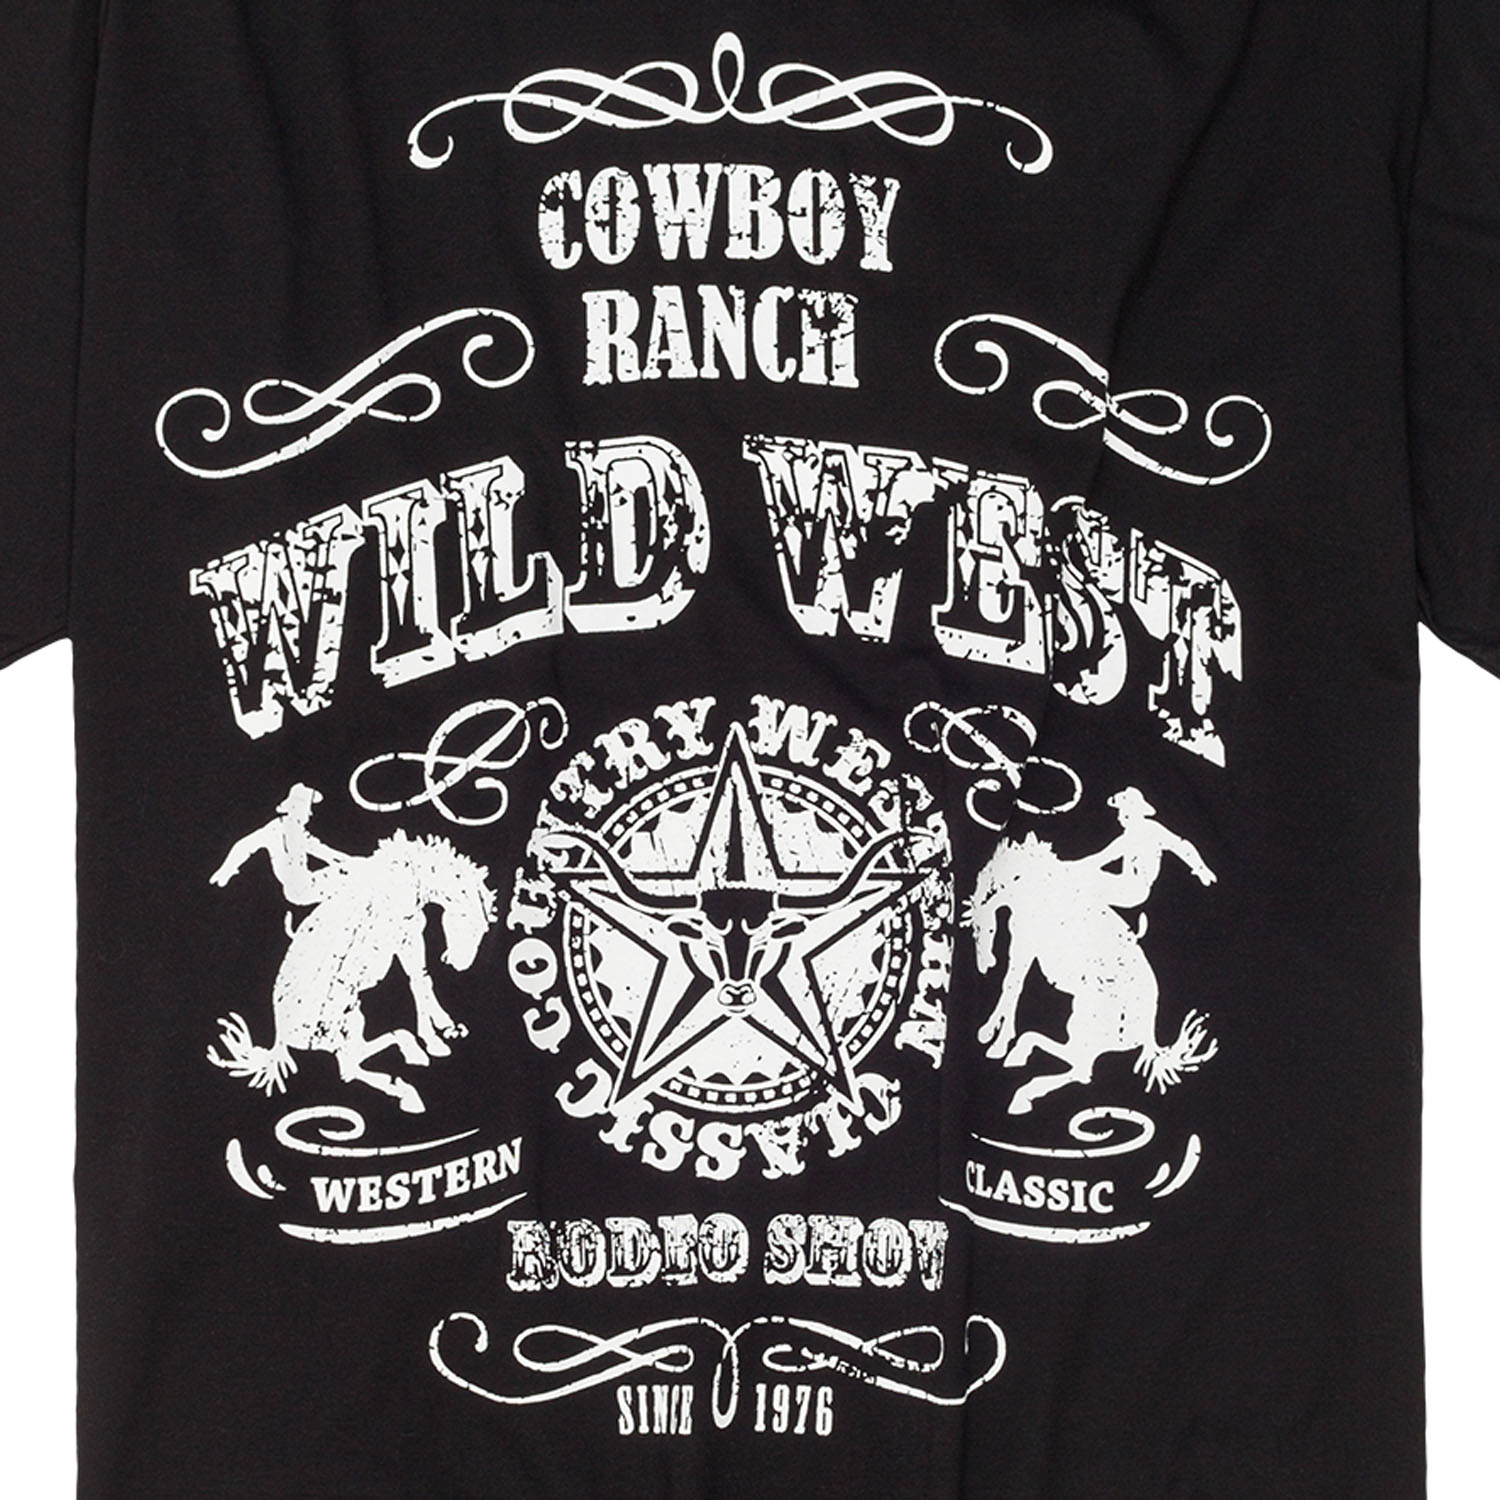 T-shirt en noir avec impression "Wild West" by Honeymoon en grandes tailles jusqu'au 15XL